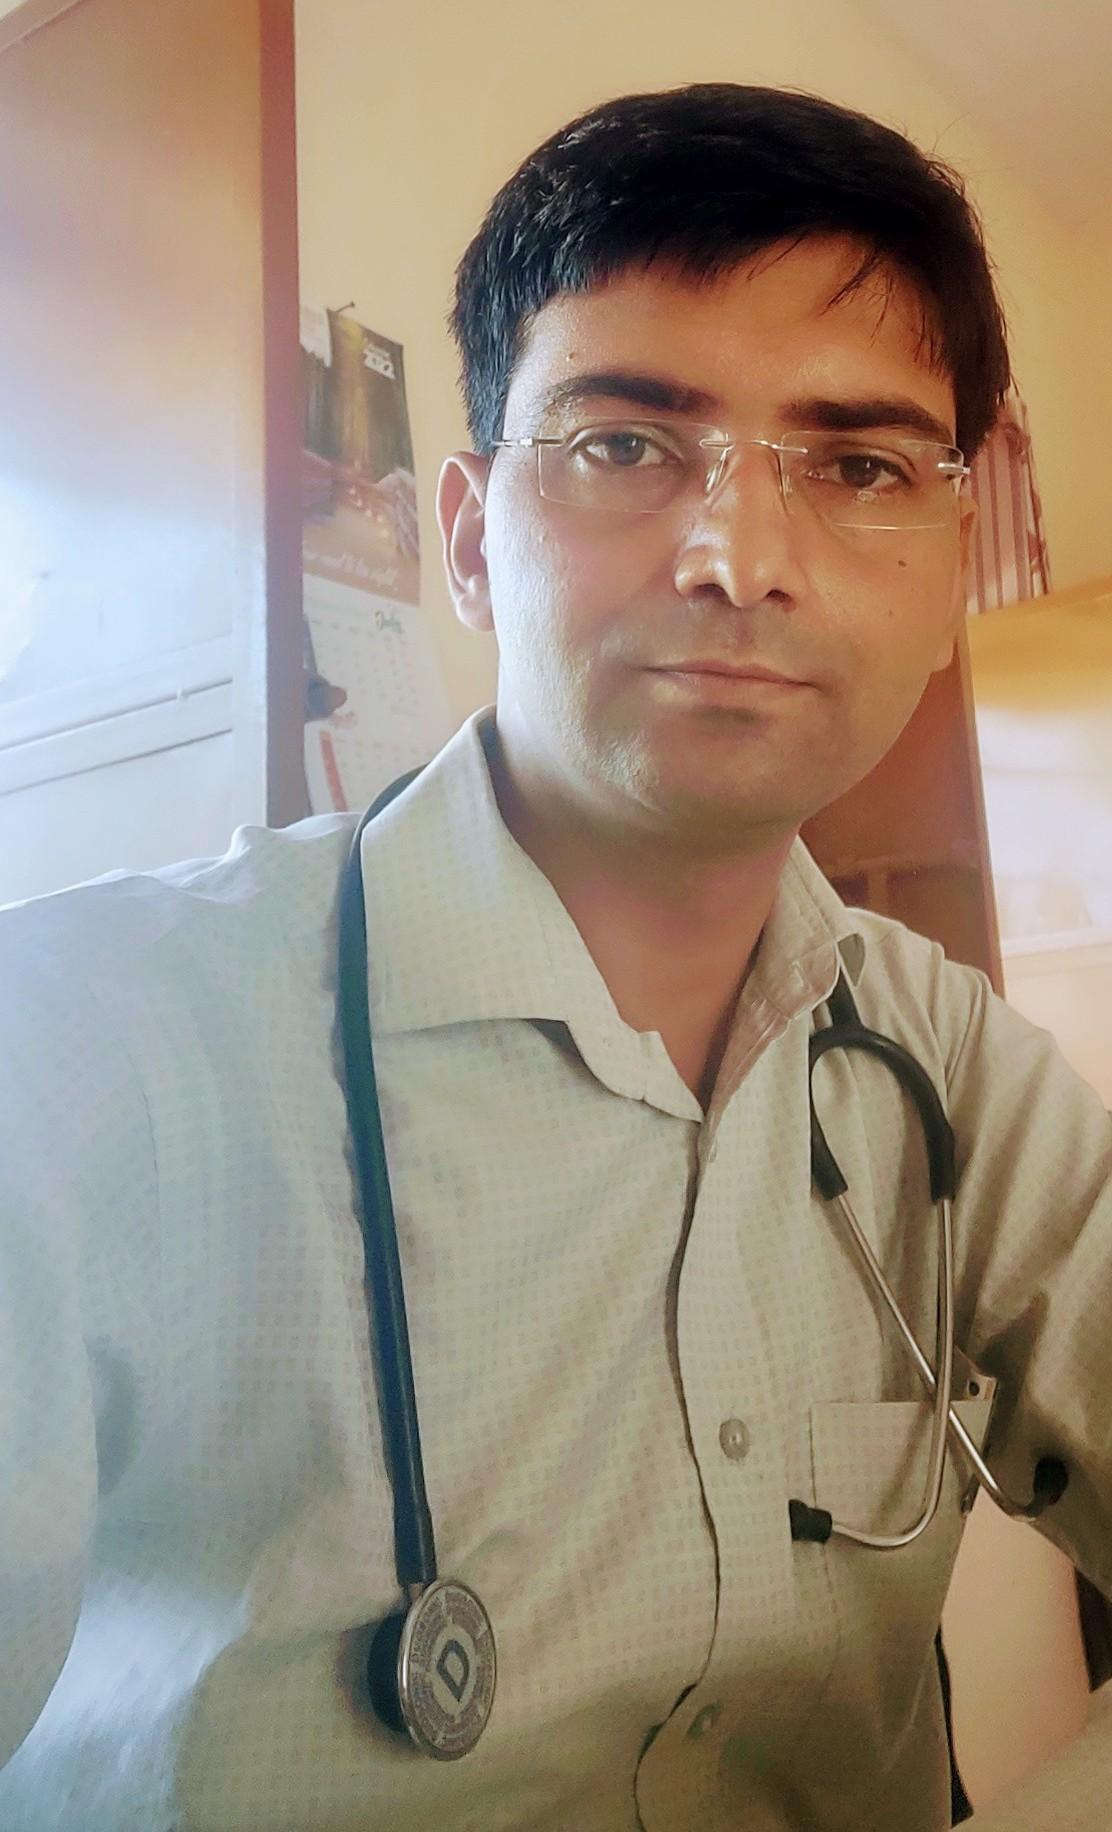 Dr.Sandeep Kumar